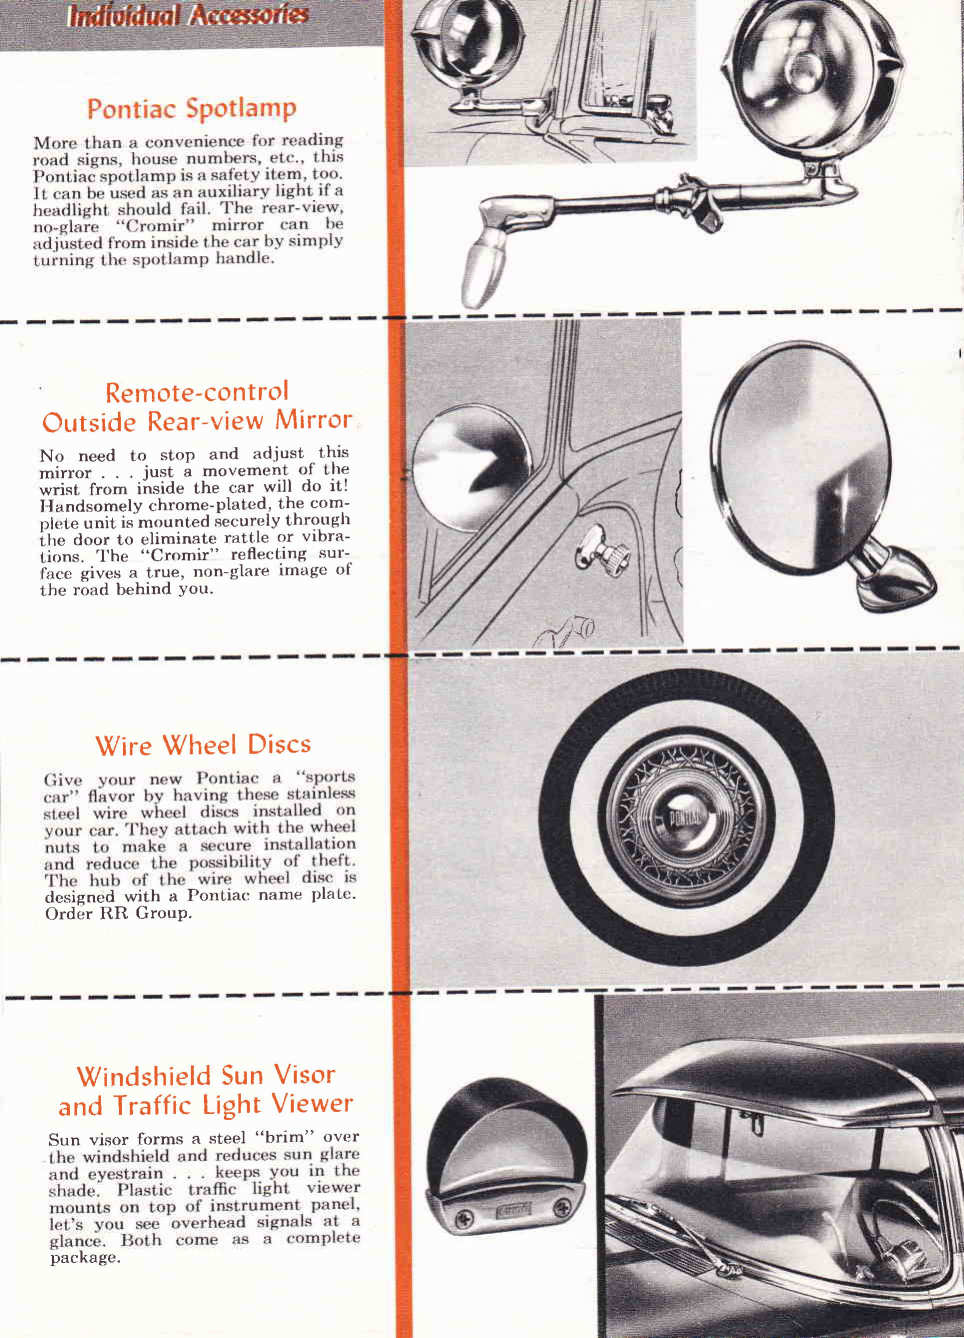 n_1956 Pontiac Accessories-14.jpg